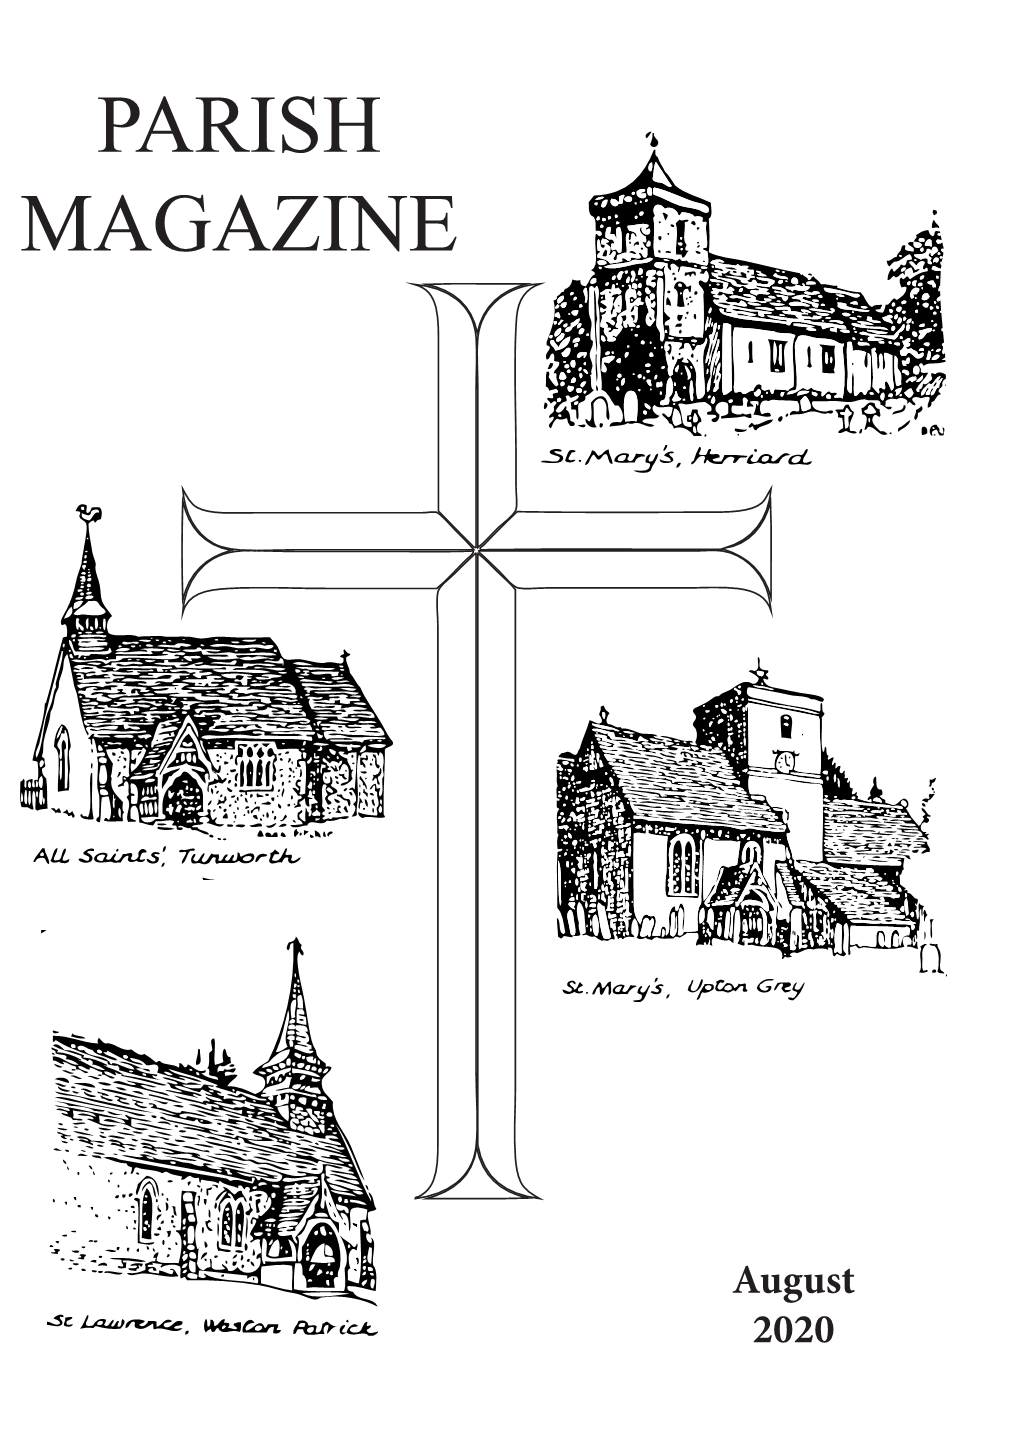 Parish Magazine August 2020